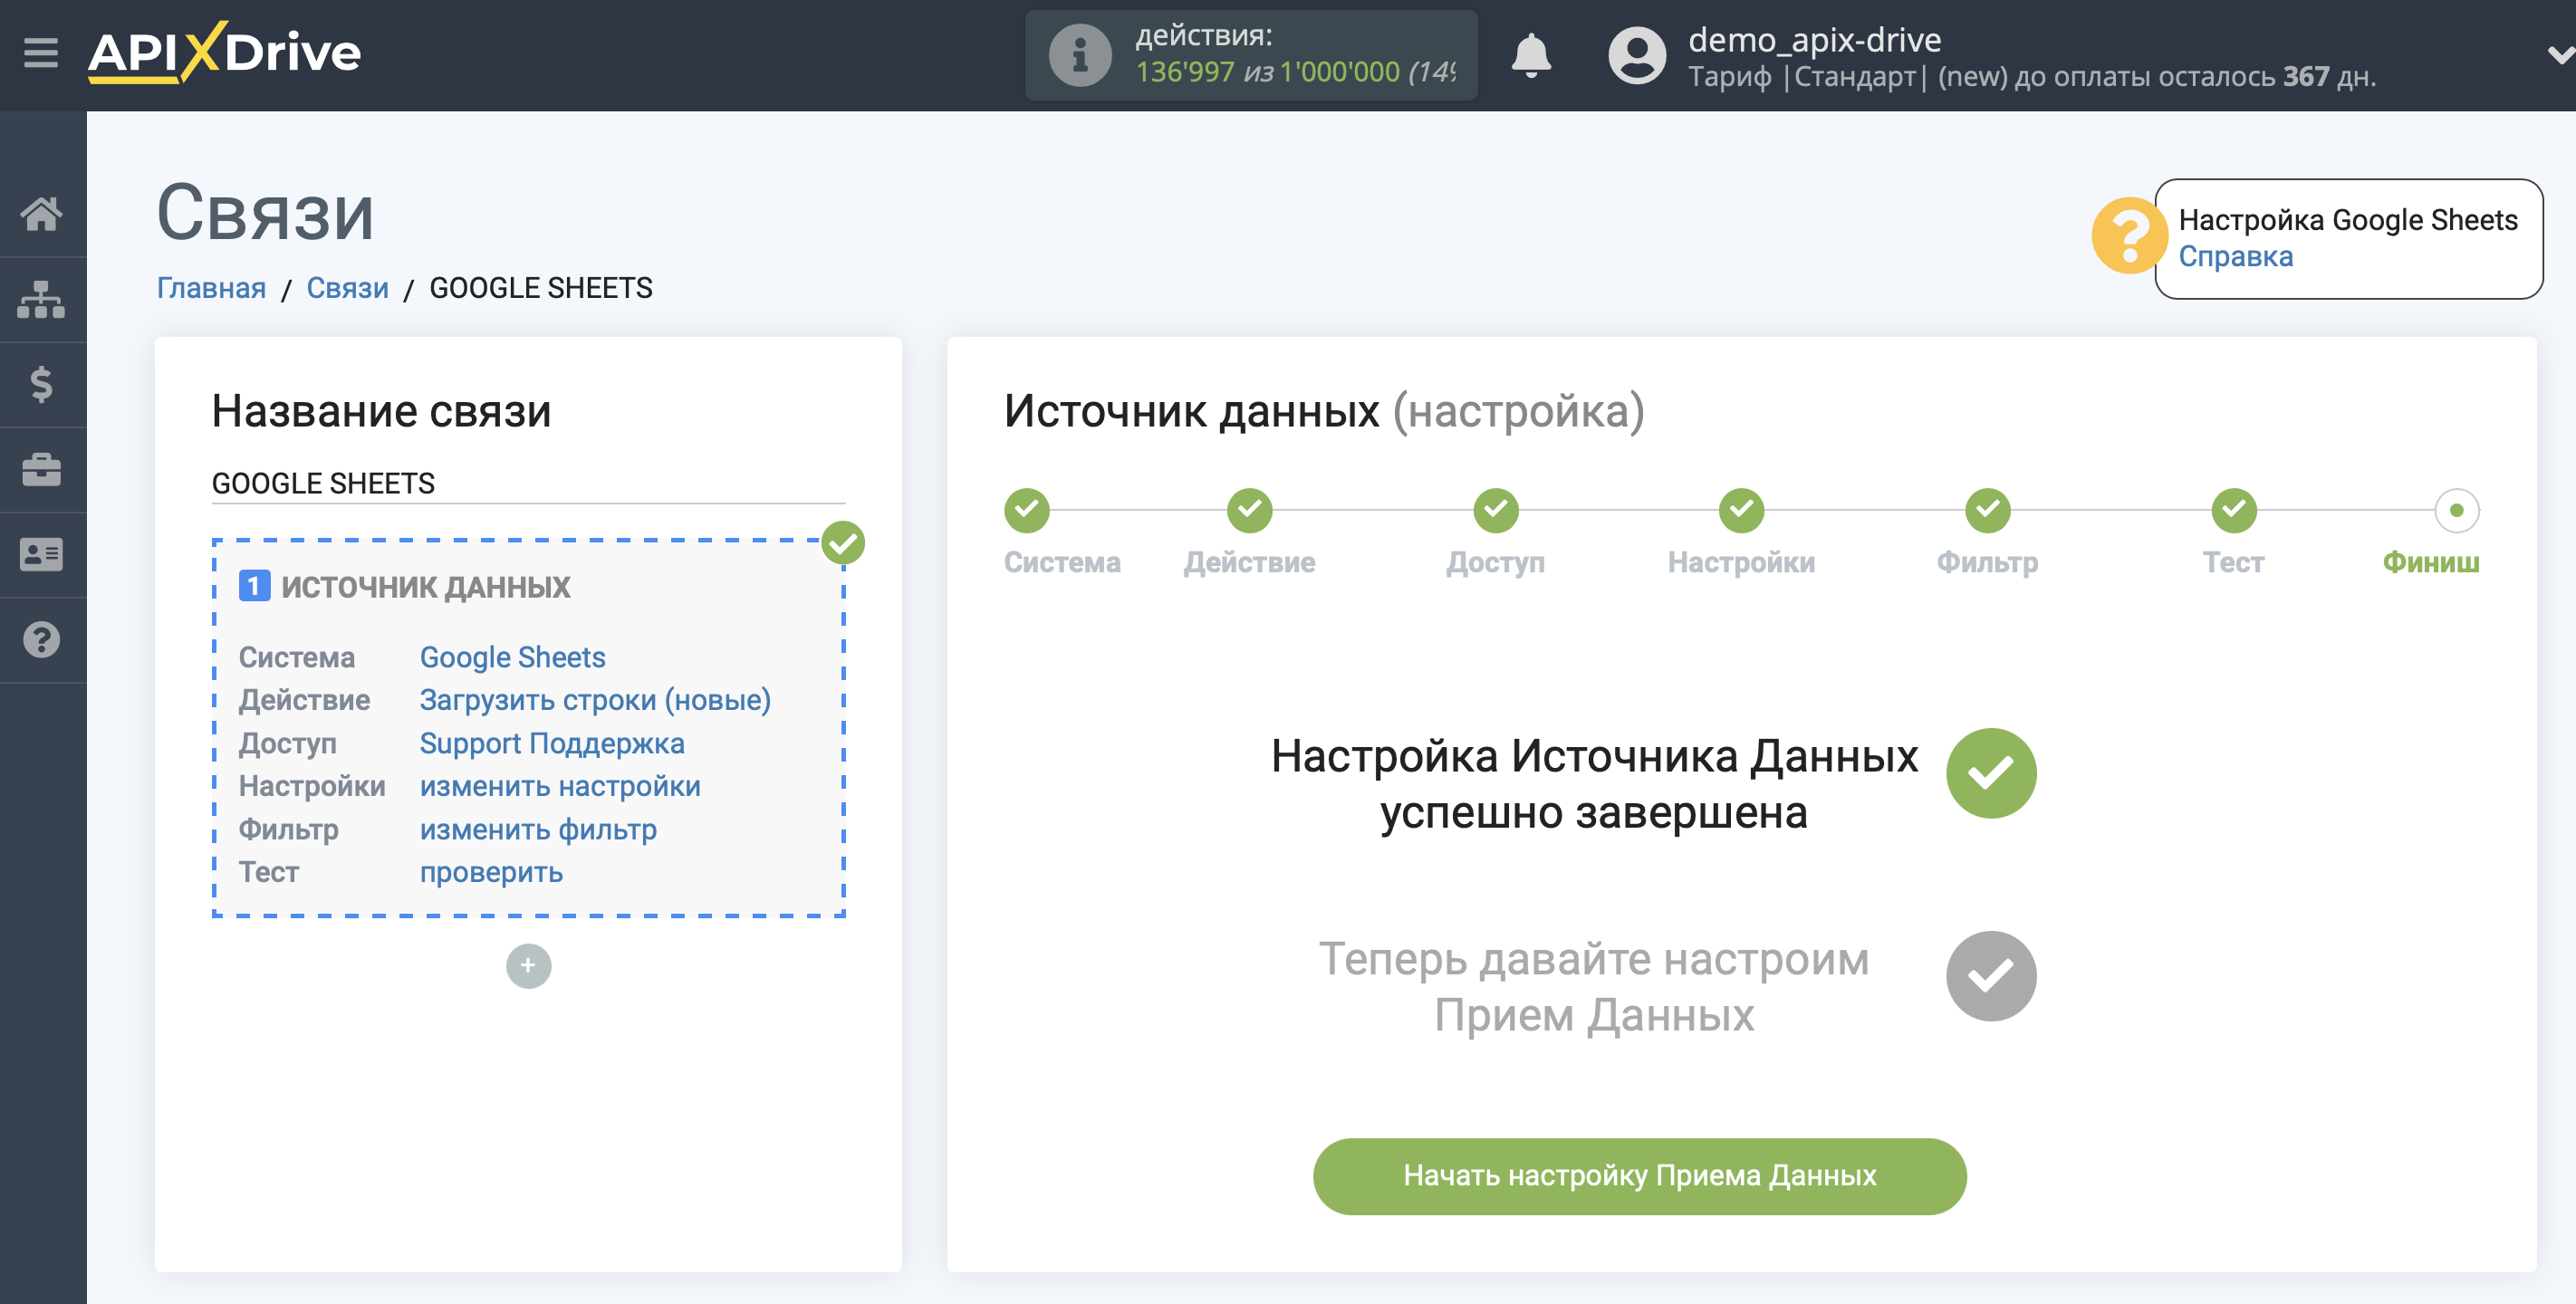 Налаштування Приймача даних SMS Україна | Перехід до налаштування Приймача  даних